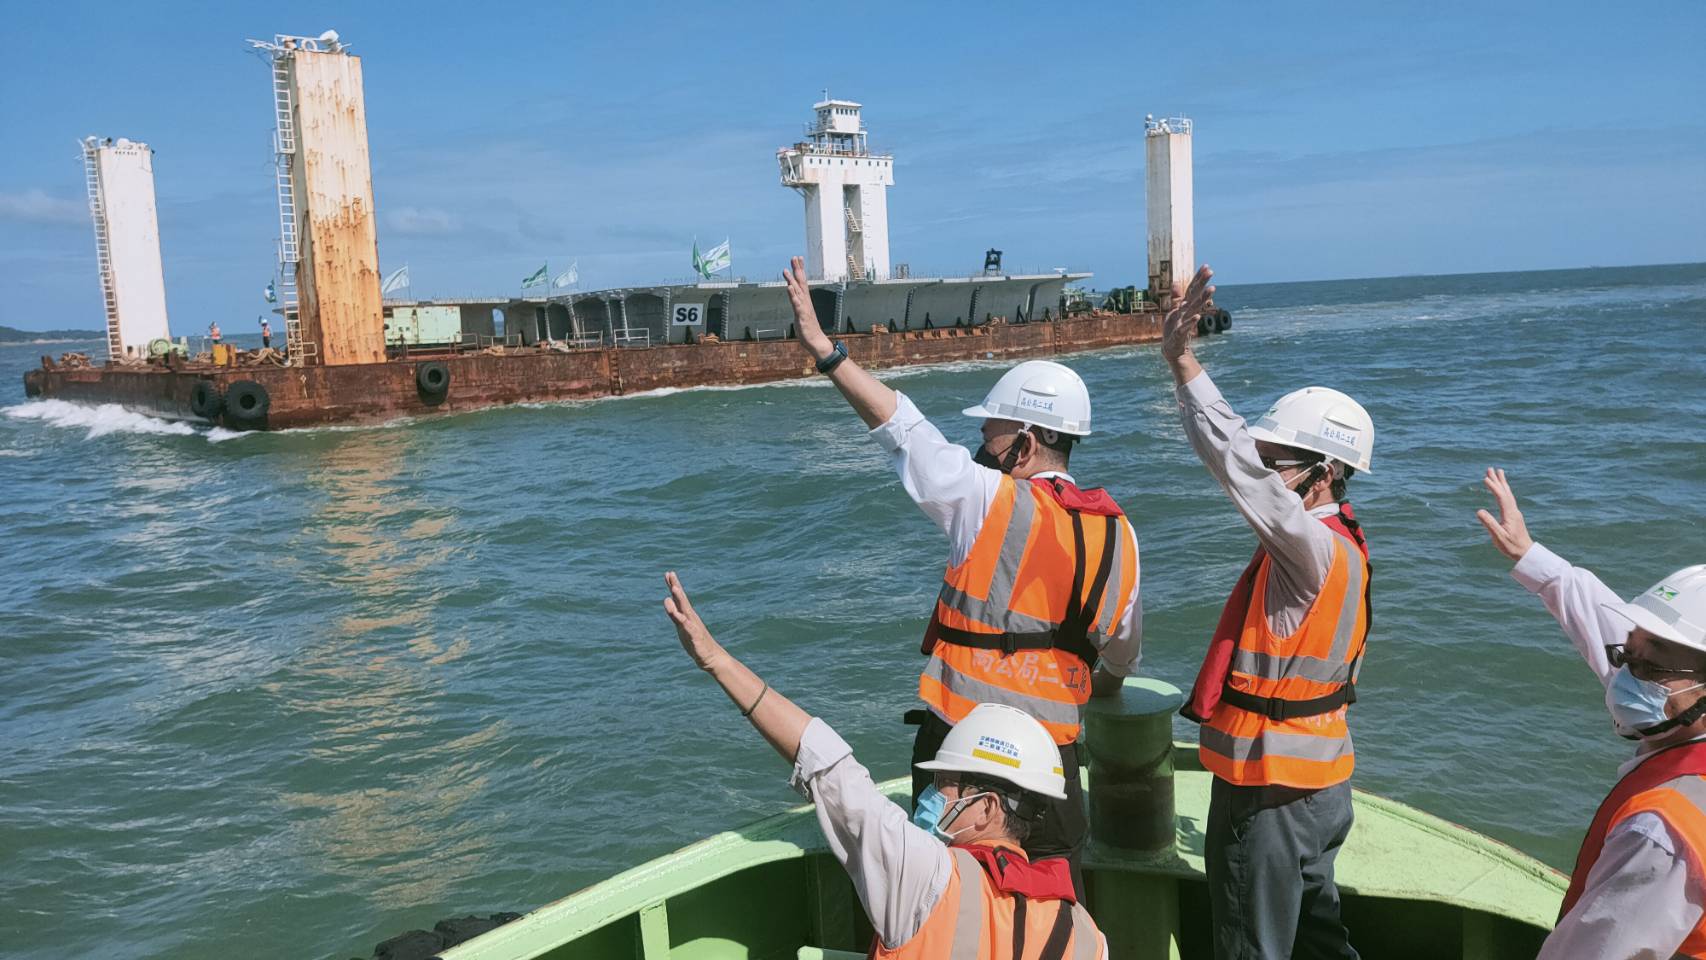 金門大橋CJ02-2C標接續工程 縣府坐船兩小時迎接最後預鑄節塊運輸船到來